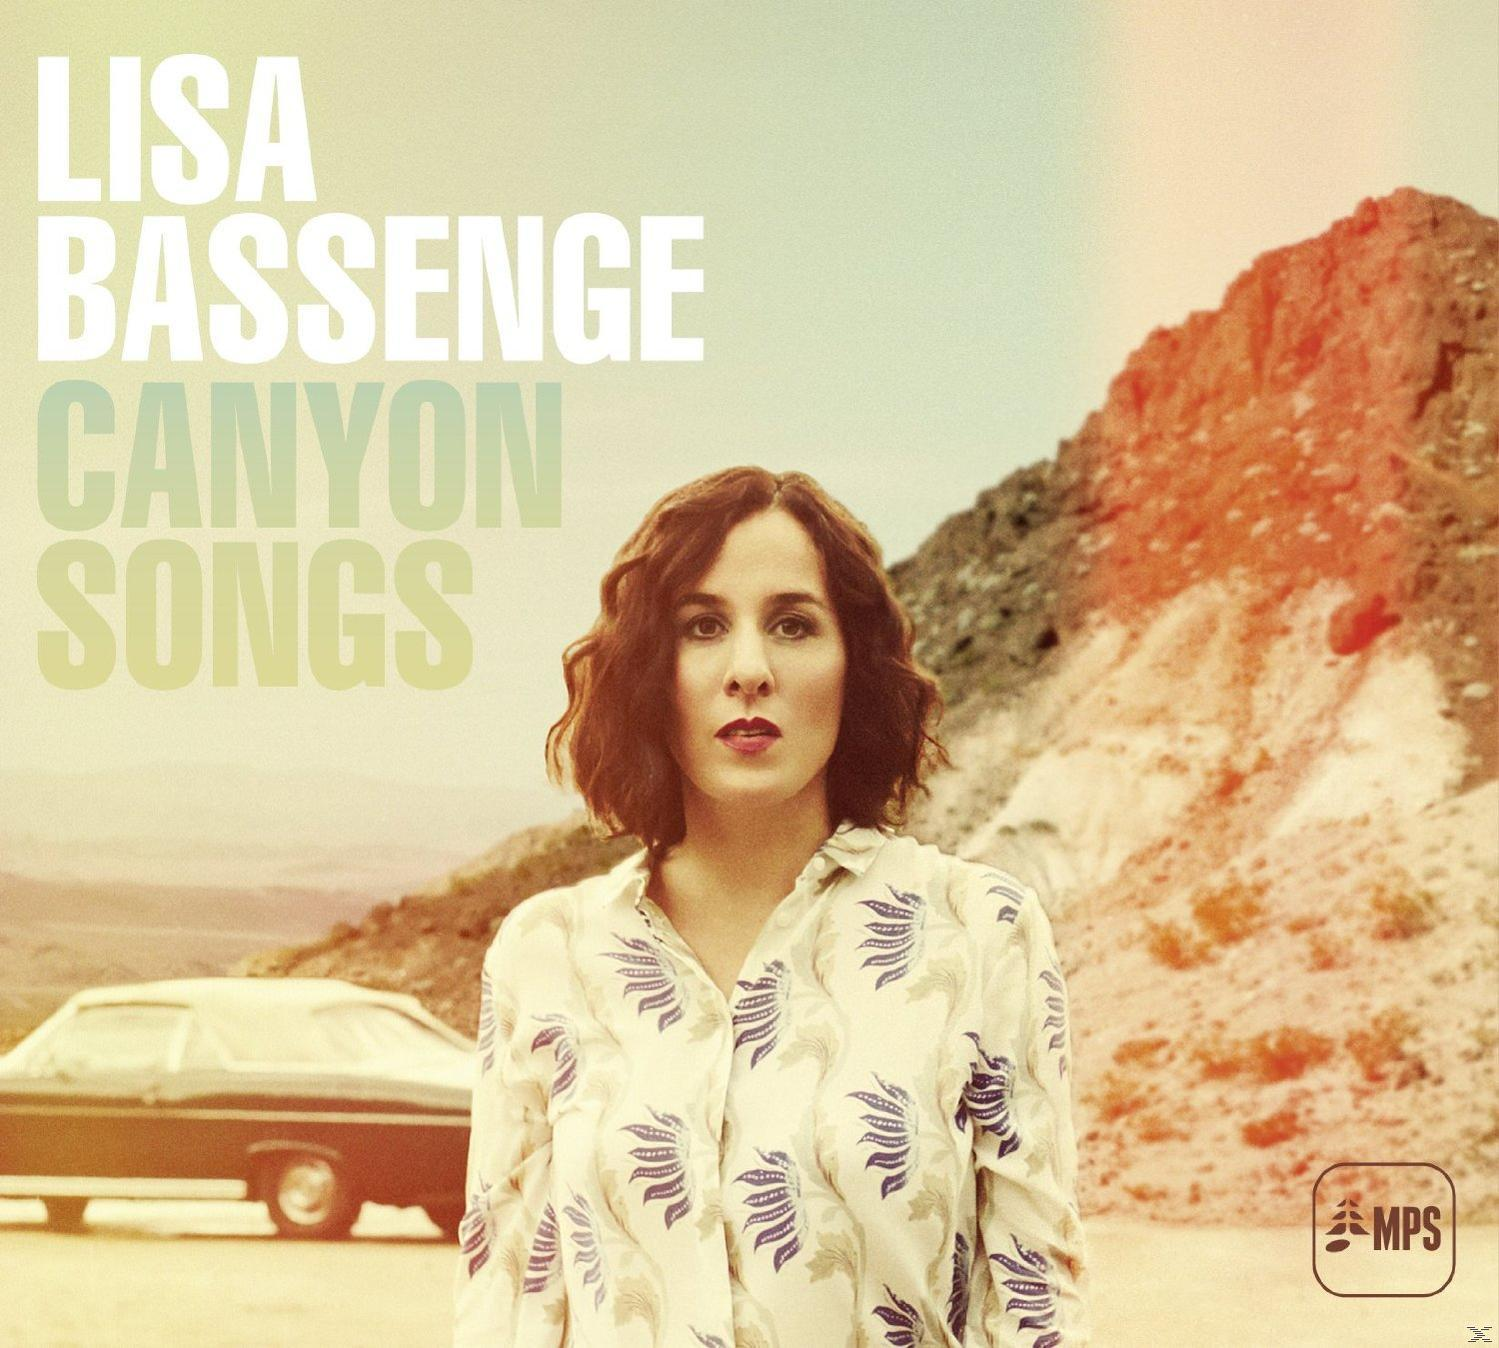 Bassenge - Lisa Songs (Vinyl) Canyon -